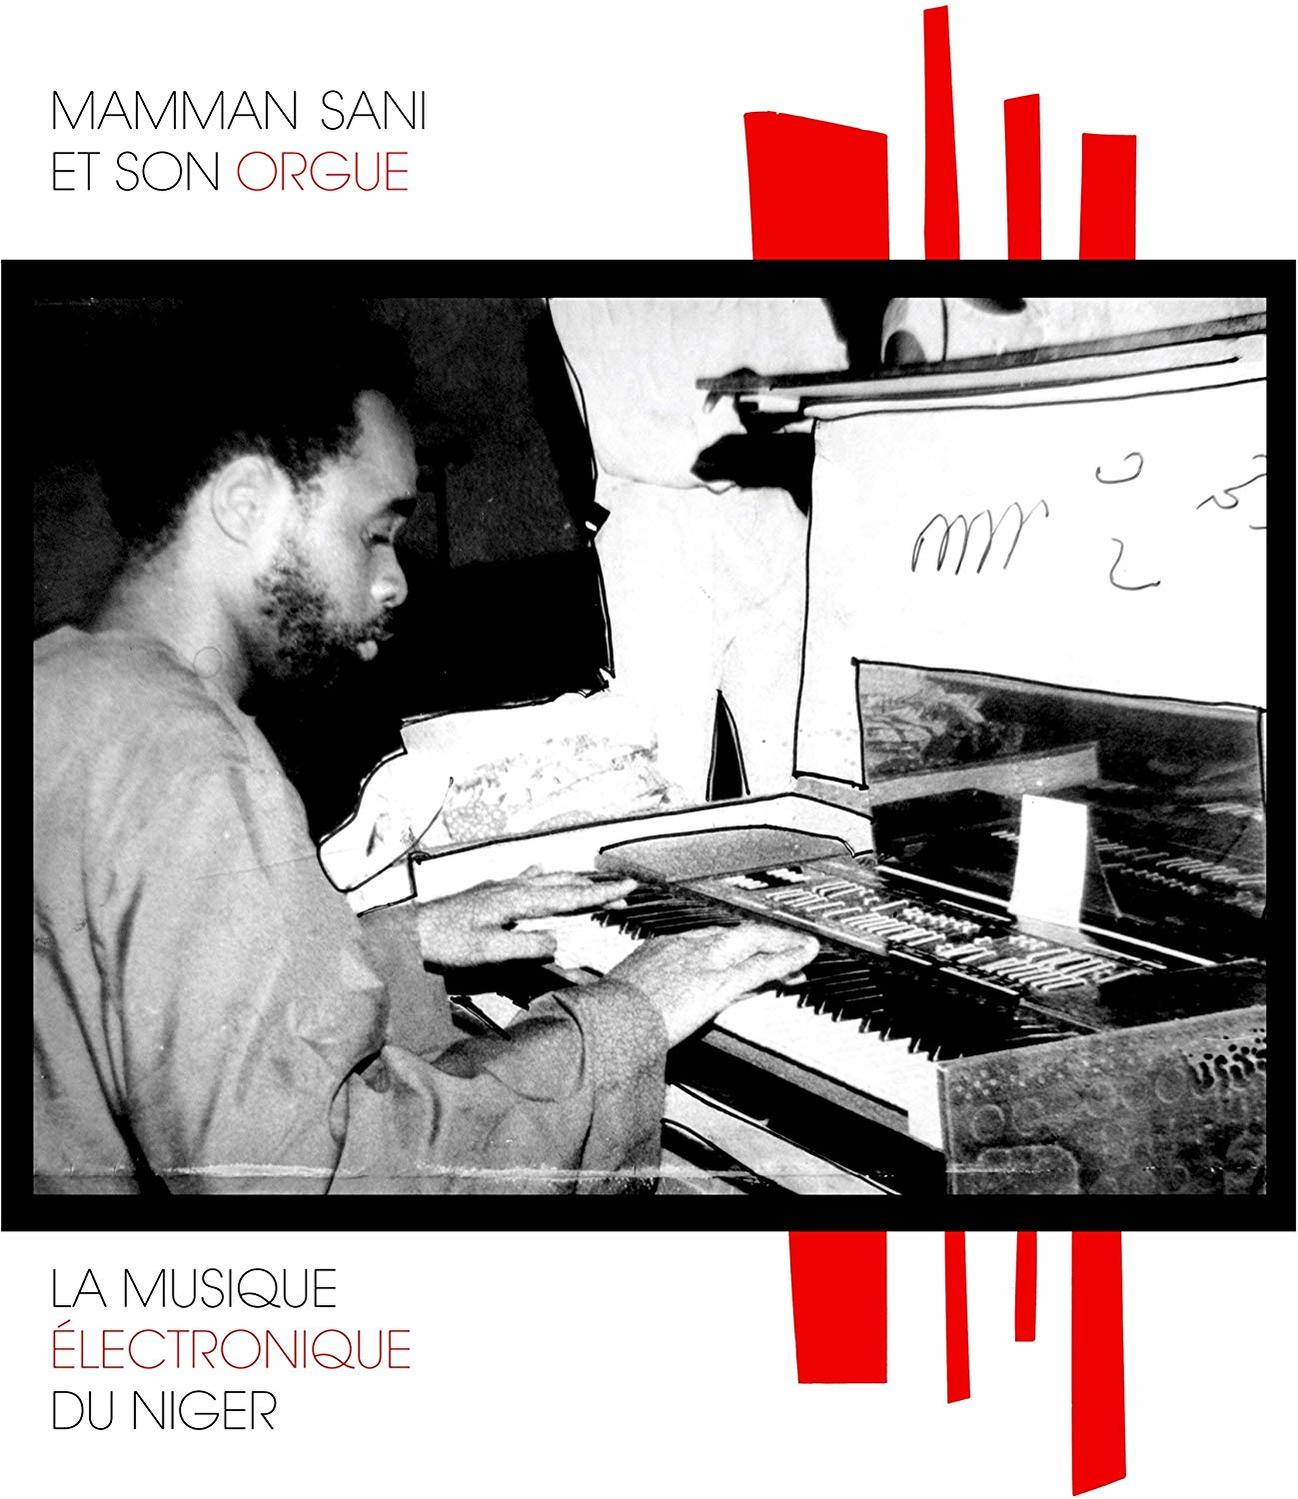 Mammane Sani - NIGER - LA MUSIQUE ELECTRONIQUE DU (Vinyl)